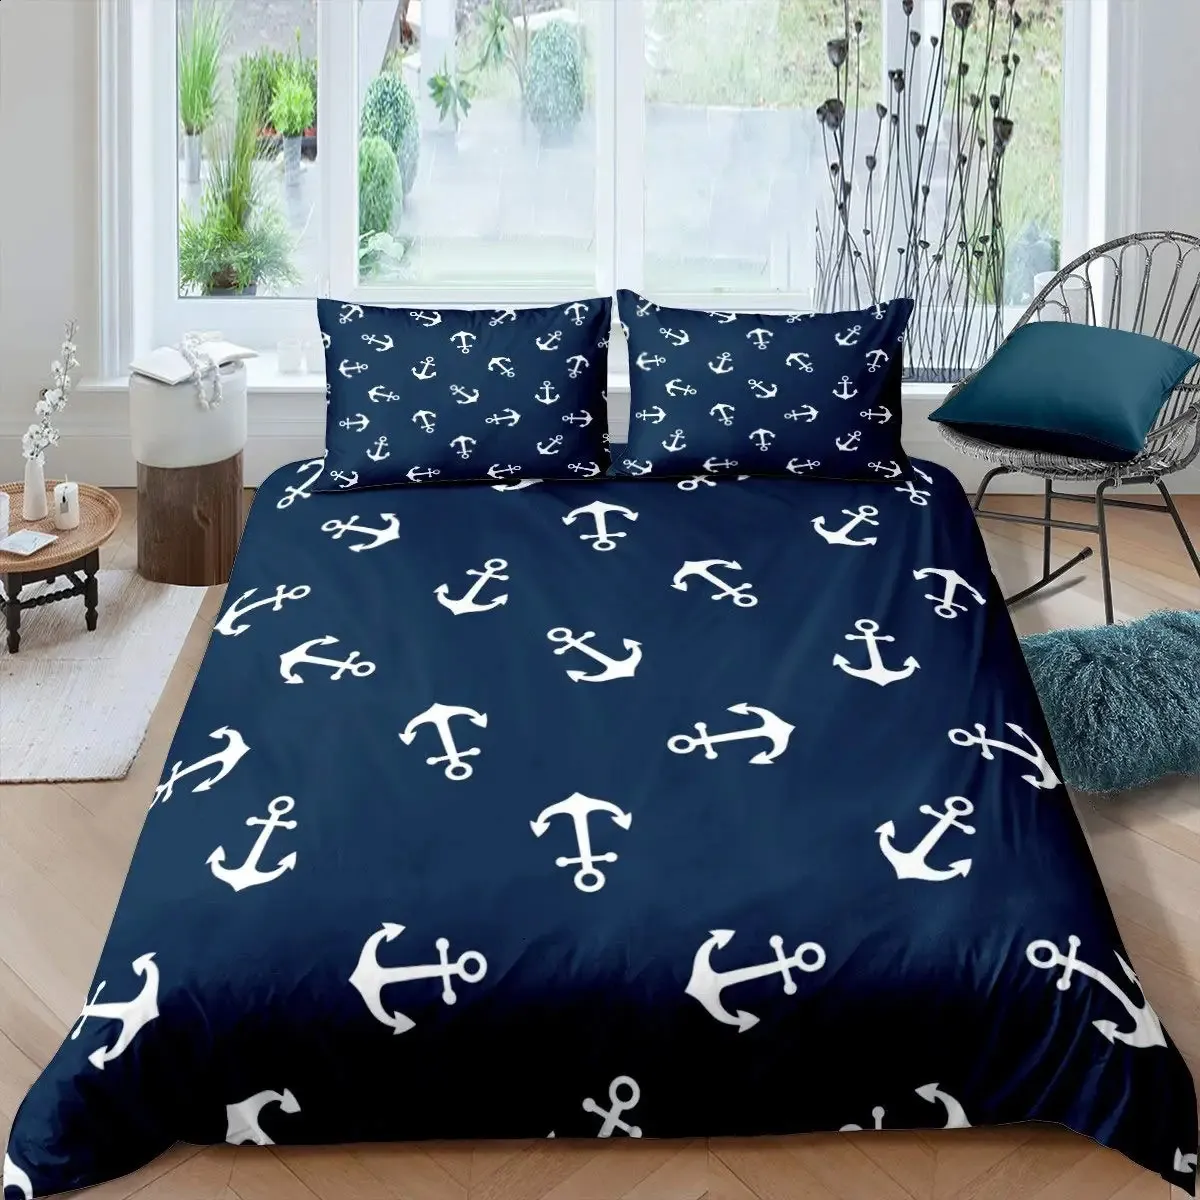 Морской комплект постельного белья Ocean Anchor Decor Пододеяльник Sailor Pirate Captain Sea Adventure Покрывало для детей Мальчиков Темно-синий 240131